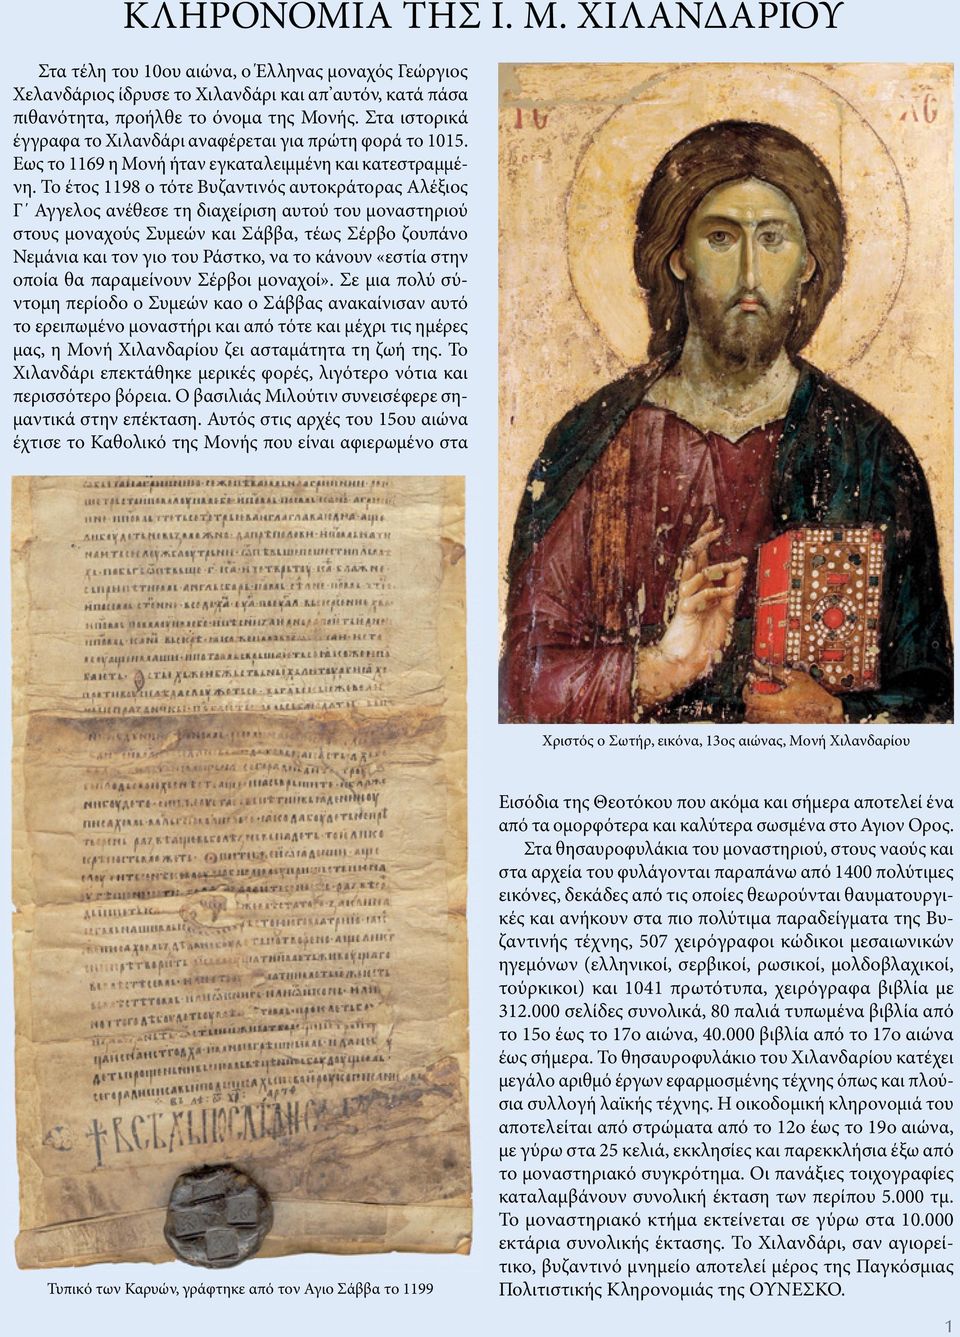 Το έτος 1198 ο τότε Βυζαντινός αυτοκράτορας Αλέξιος Γ Αγγελος ανέθεσε τη διαχείριση αυτού του μοναστηριού στους μοναχούς Συμεών και Σάββα, τέως Σέρβο ζουπάνο Νεμάνια και τον γιο του Ράστκο, να το